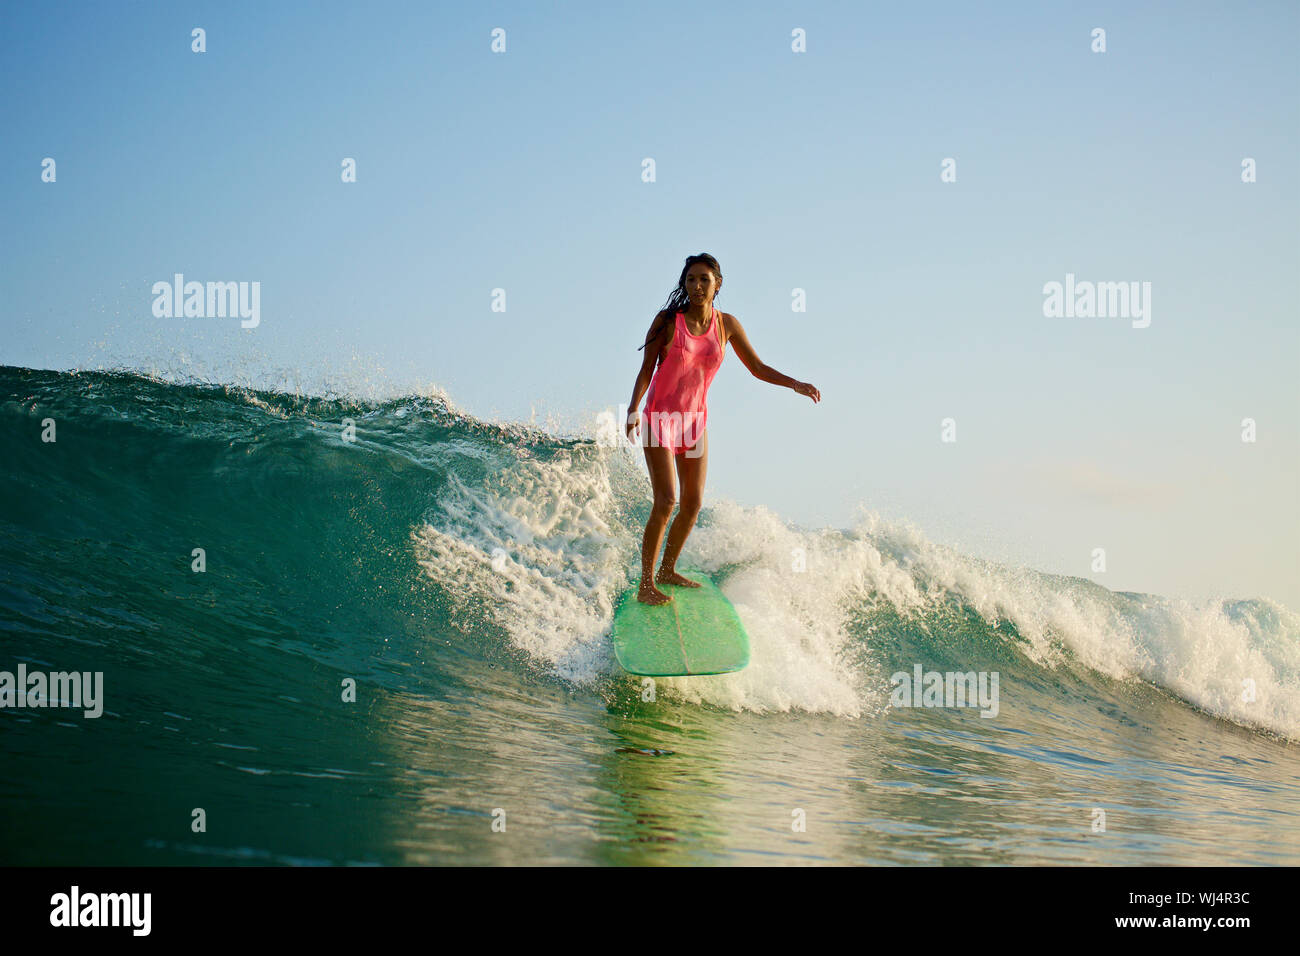 Surfer femenina montando las olas del océano Foto de stock